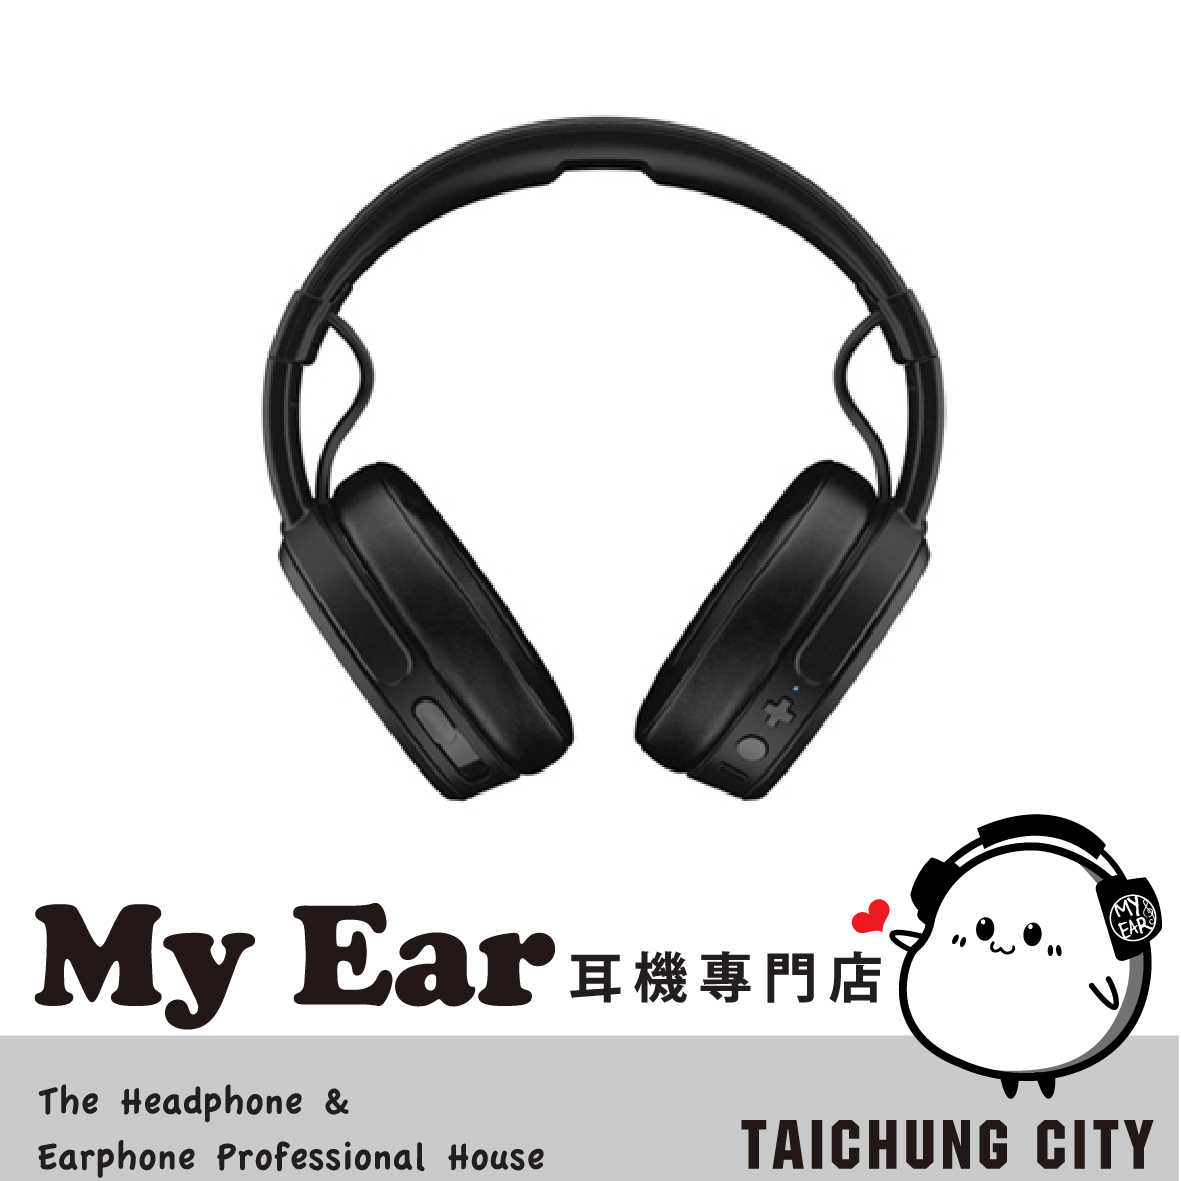 Skullcandy 骷髏糖 Crusher 黑 藍芽 抗噪 耳罩式 耳機 | My Ear 耳機專門店